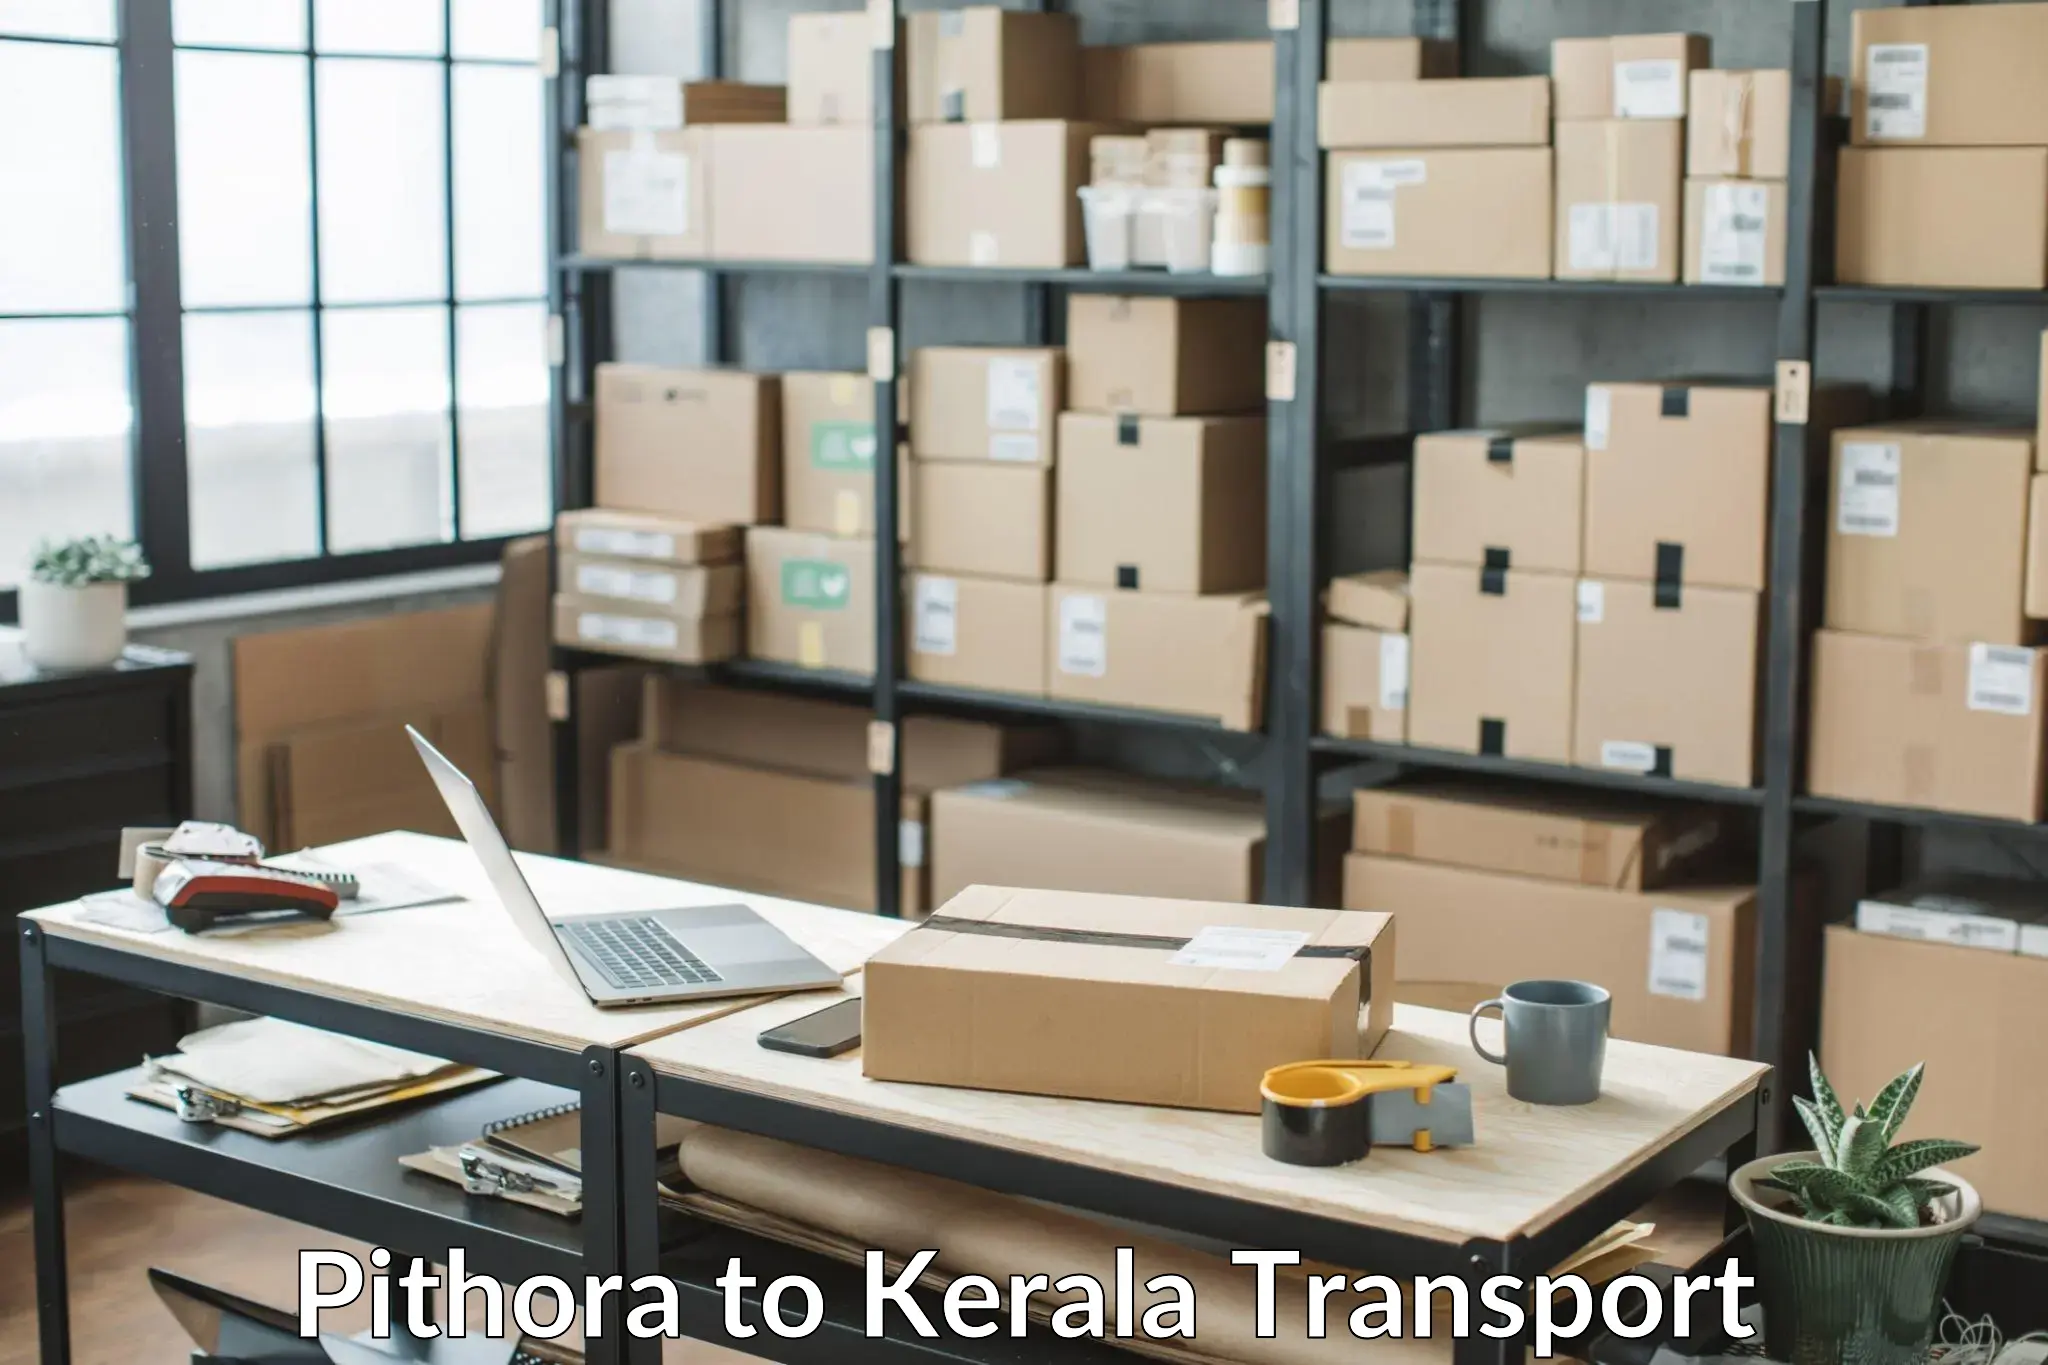 Furniture transport service Pithora to Kerala